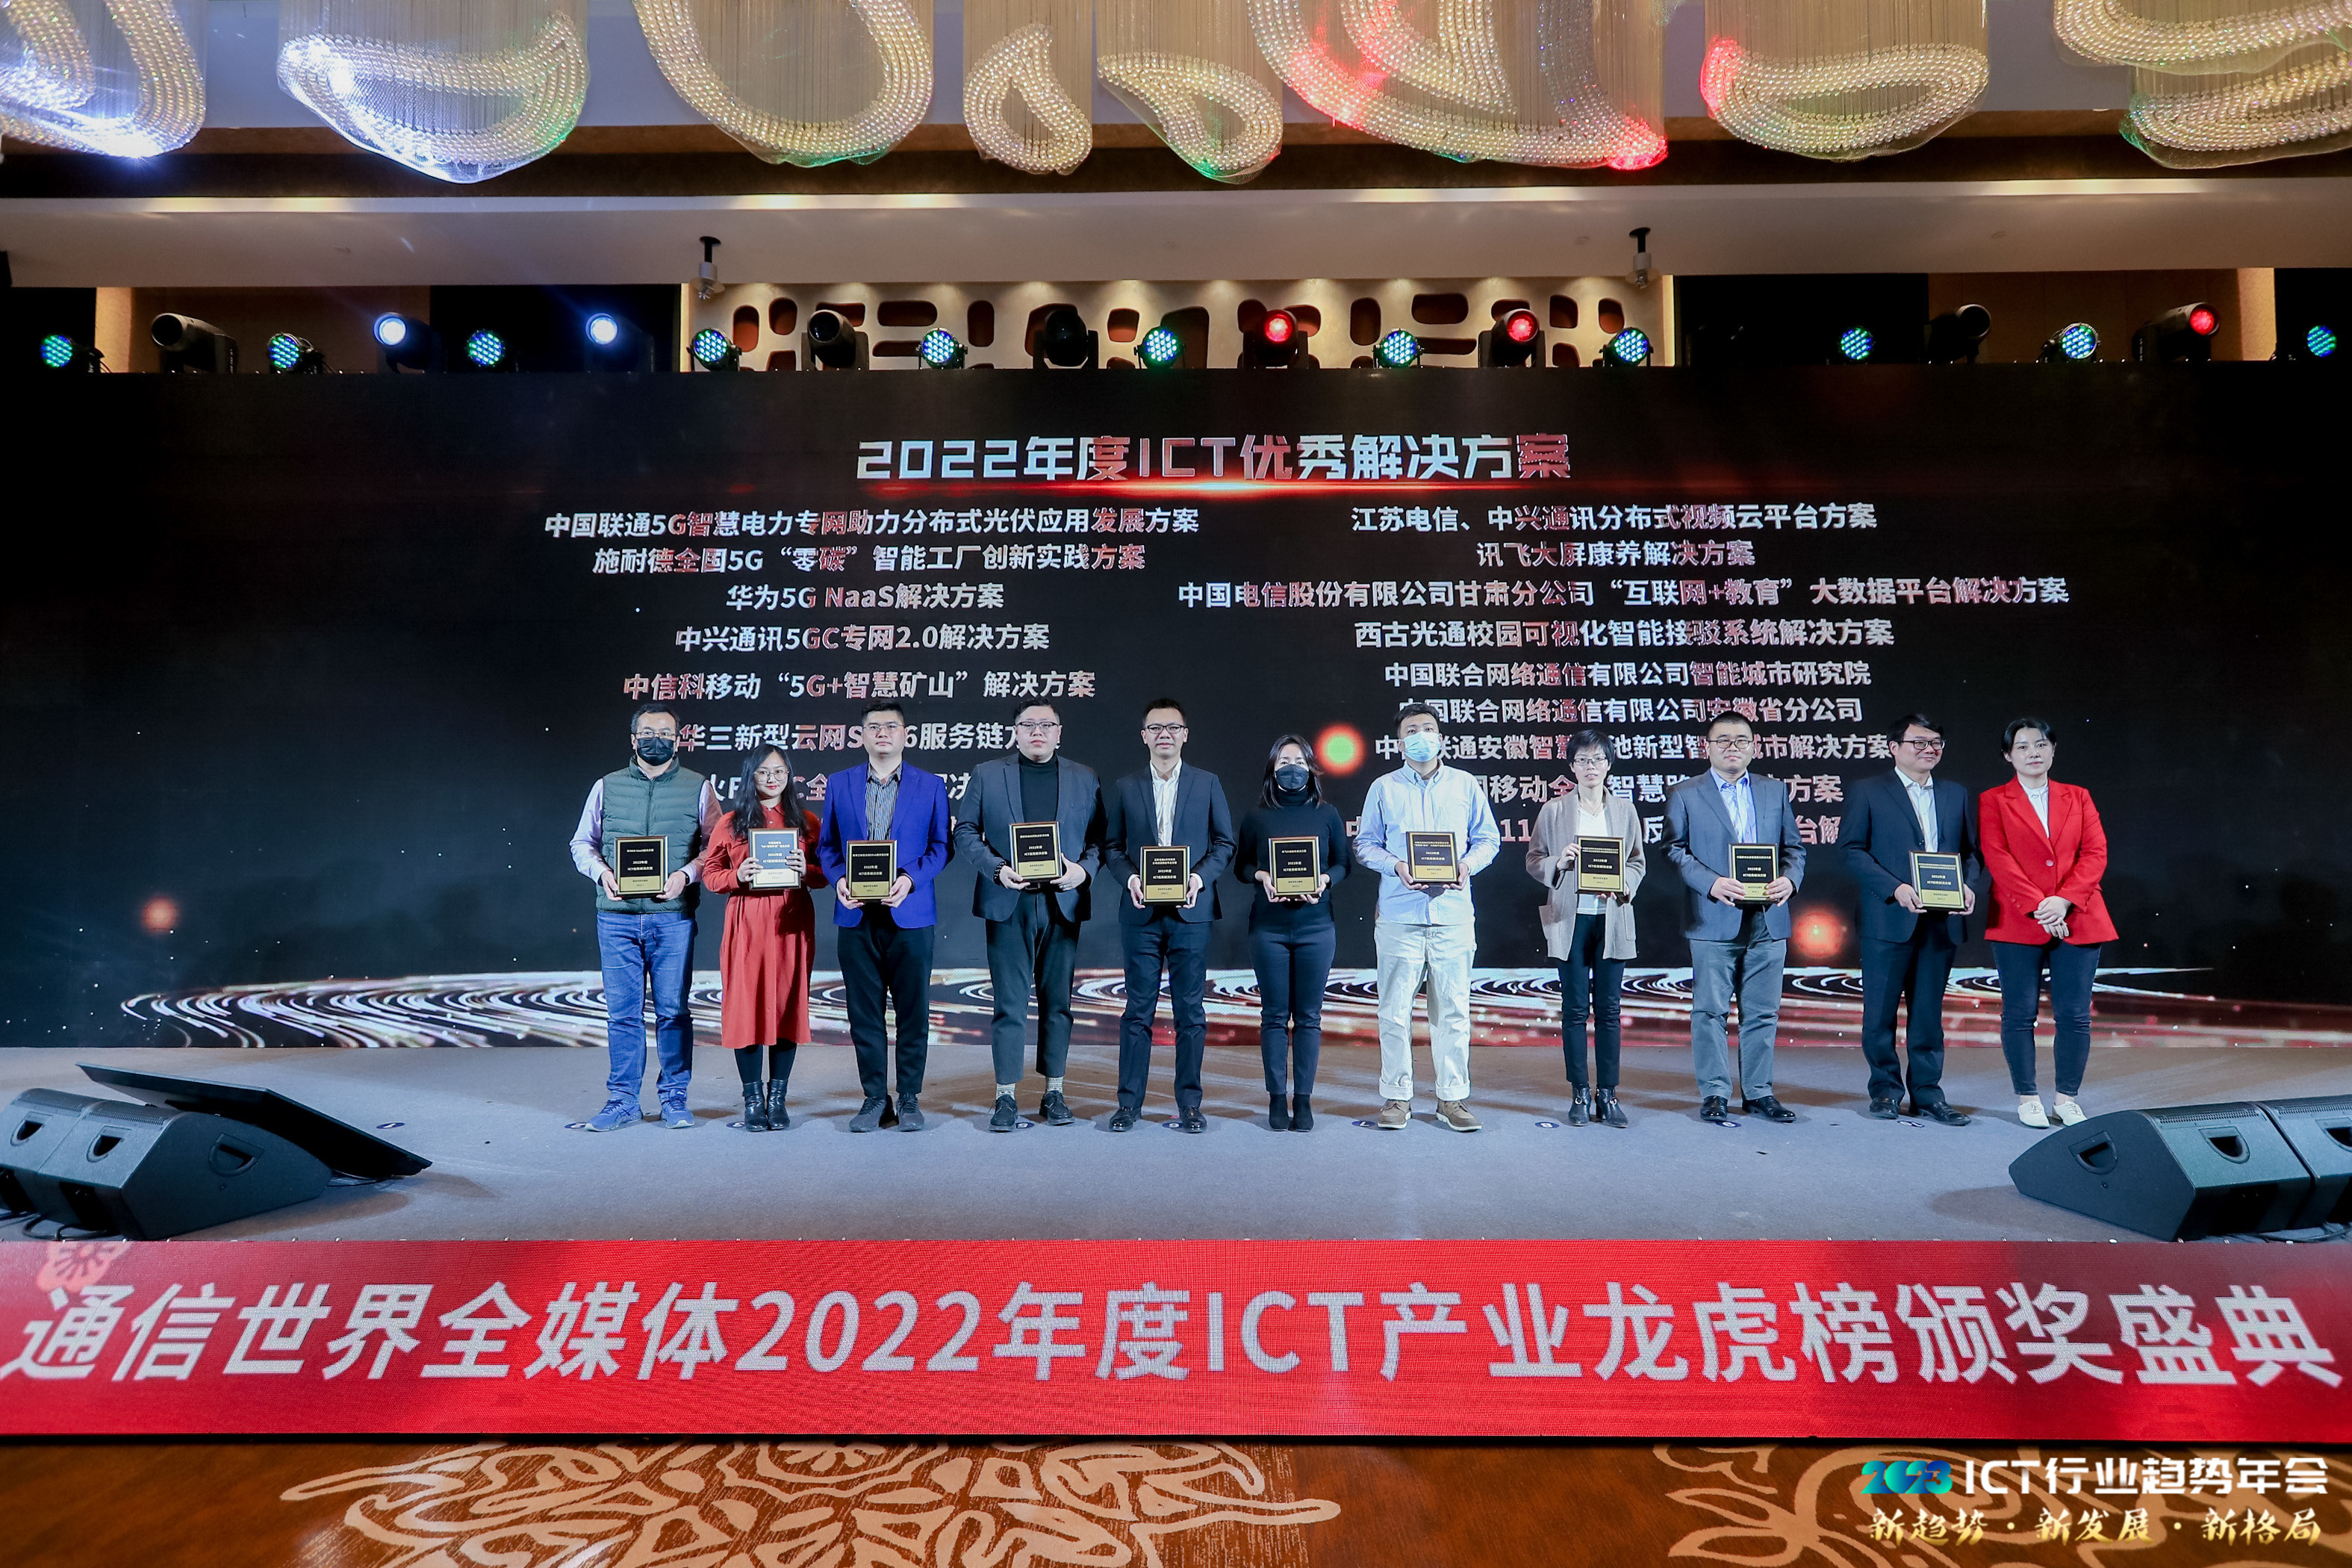 西安新路荣获“2022年度ICT优秀解决方案”奖项